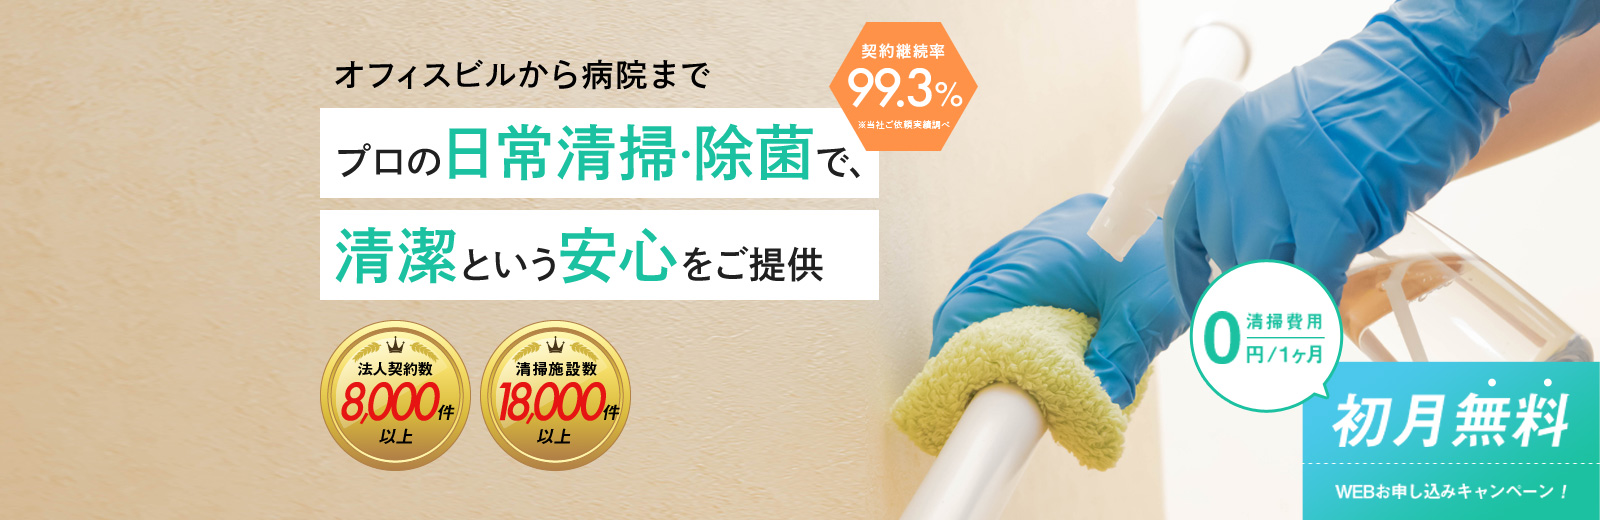 プロの日常清掃・除菌で、清潔という安心をご提供